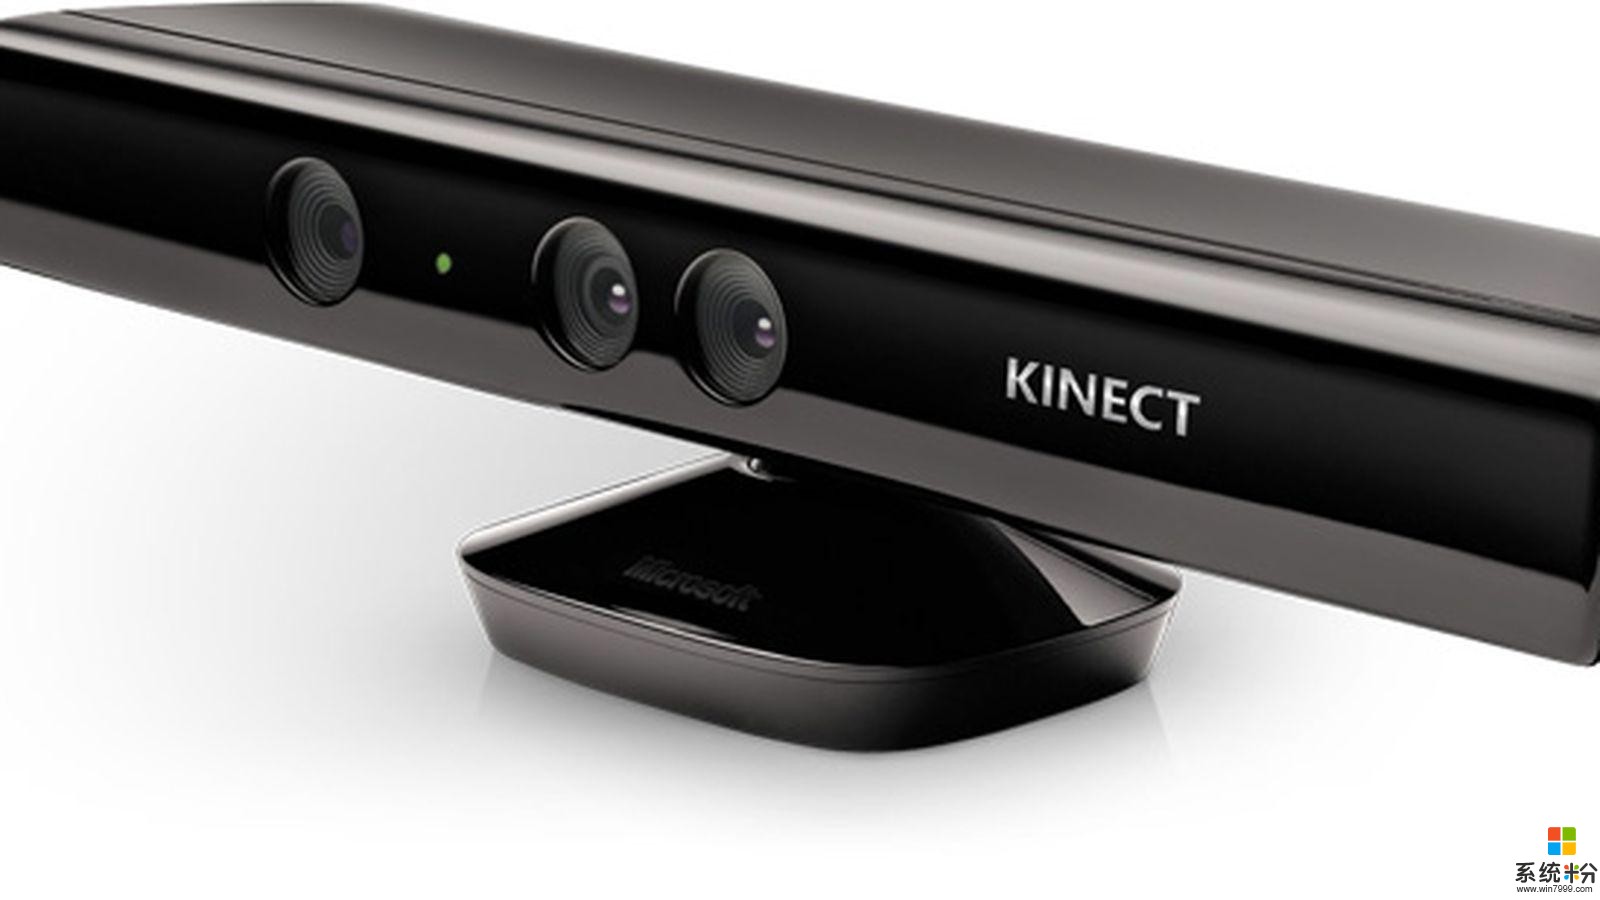 體驗設備 Kinect 命運終結, 微軟的“眼睛”停產了(1)